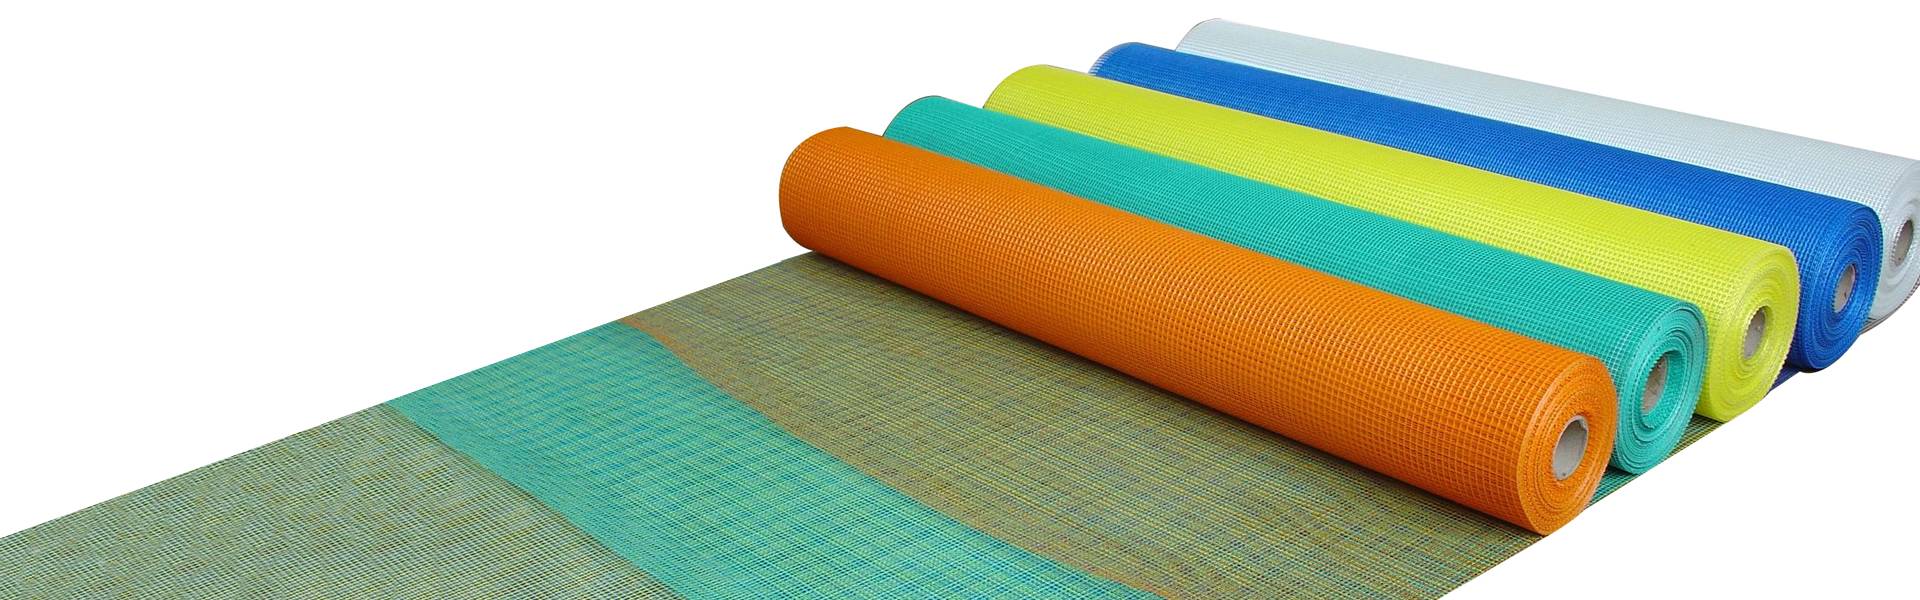 Rollos de malla de fibra de vidrio con diferentes colores.